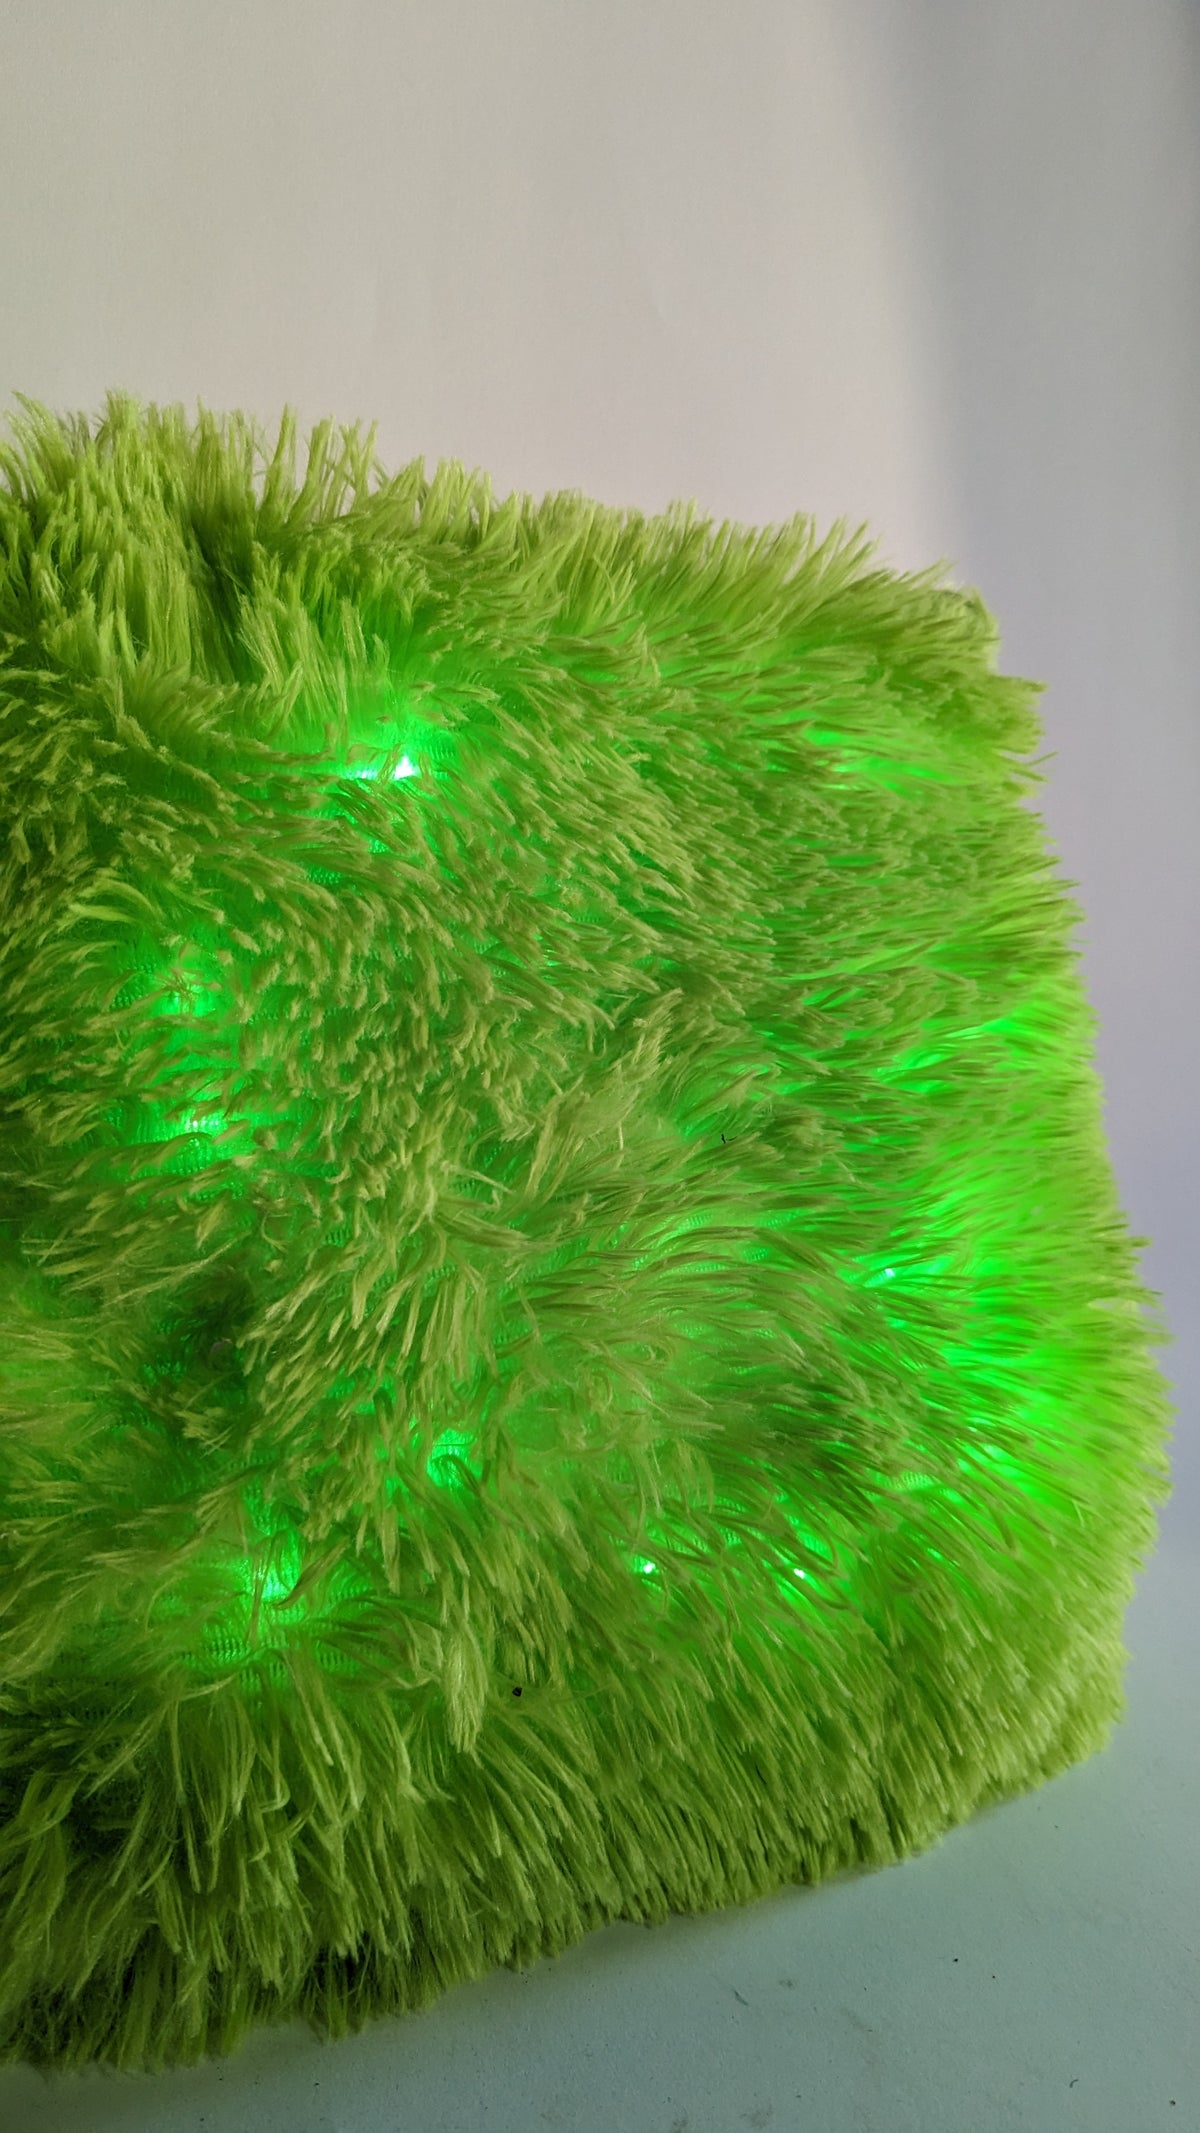 SAMPLE SALE - Light up Green Fuzzy Pillow - FINAL SALE